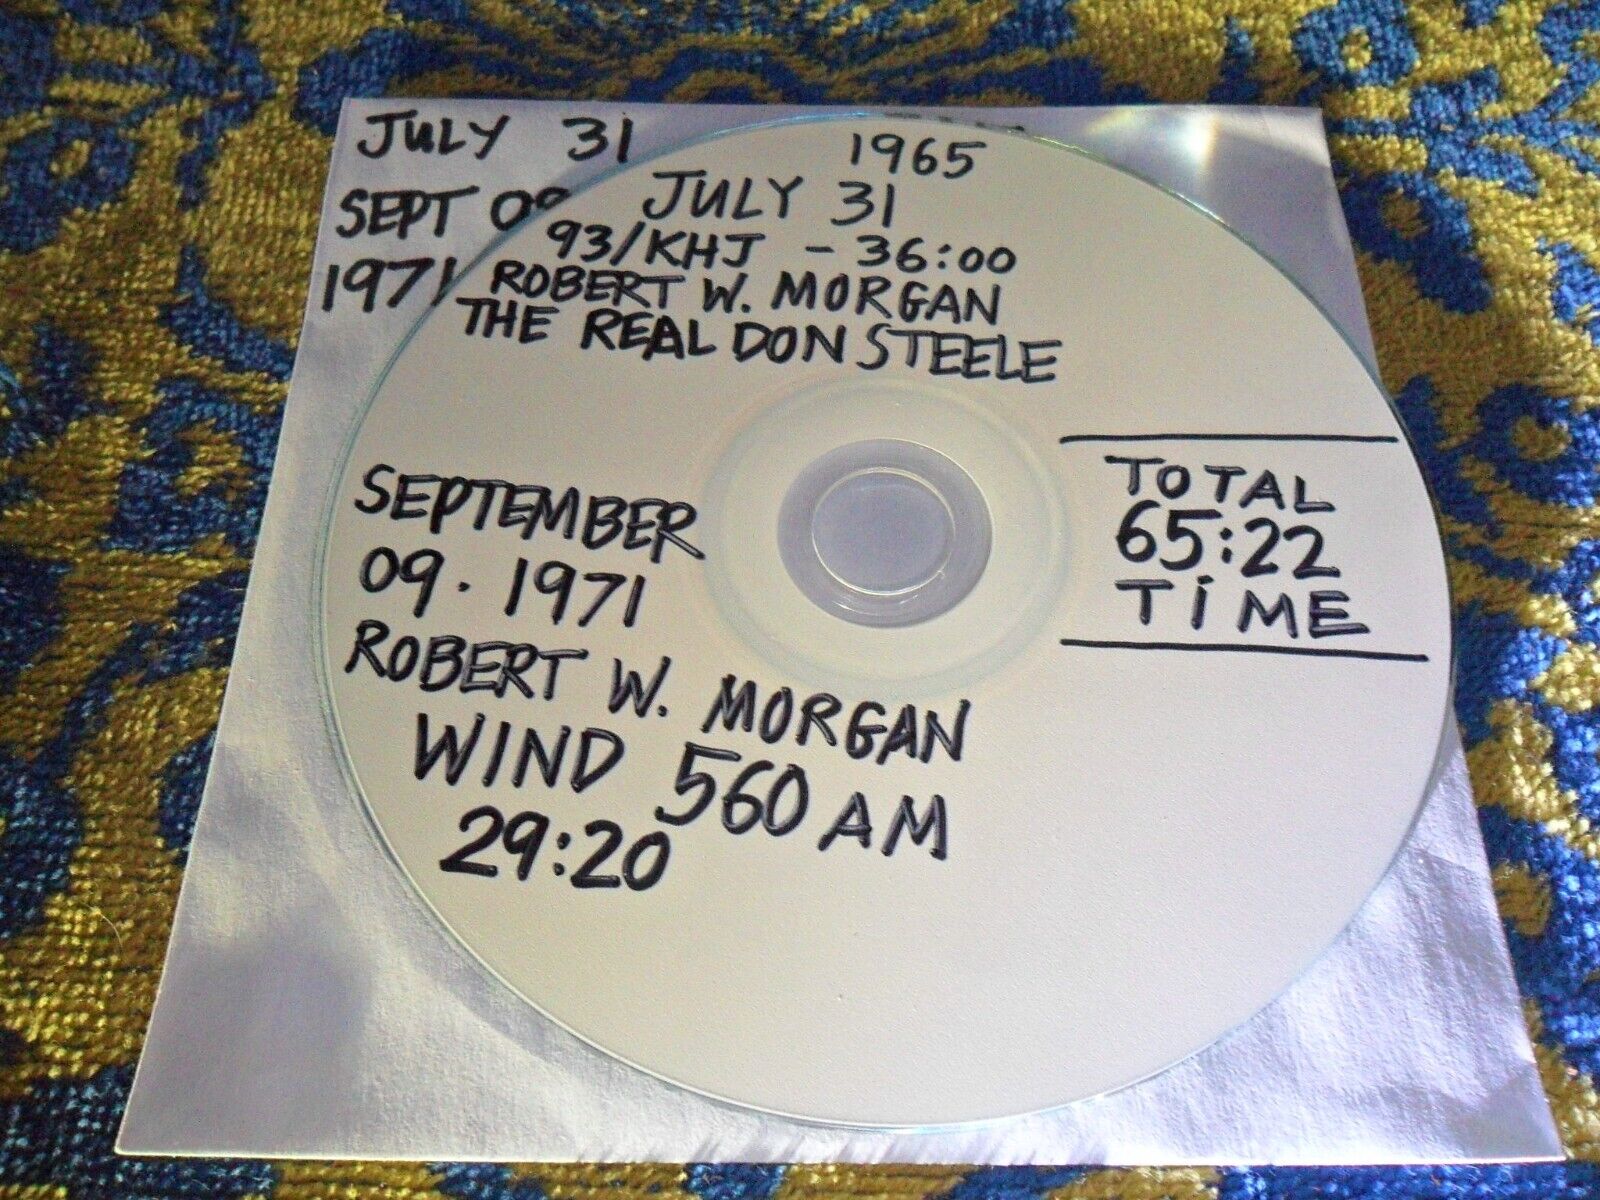 1965 93/KHJ AM - THE REAL DON STEELE & ROBERT W MORGAN +1971 WIND & KIQQ - 2 CD